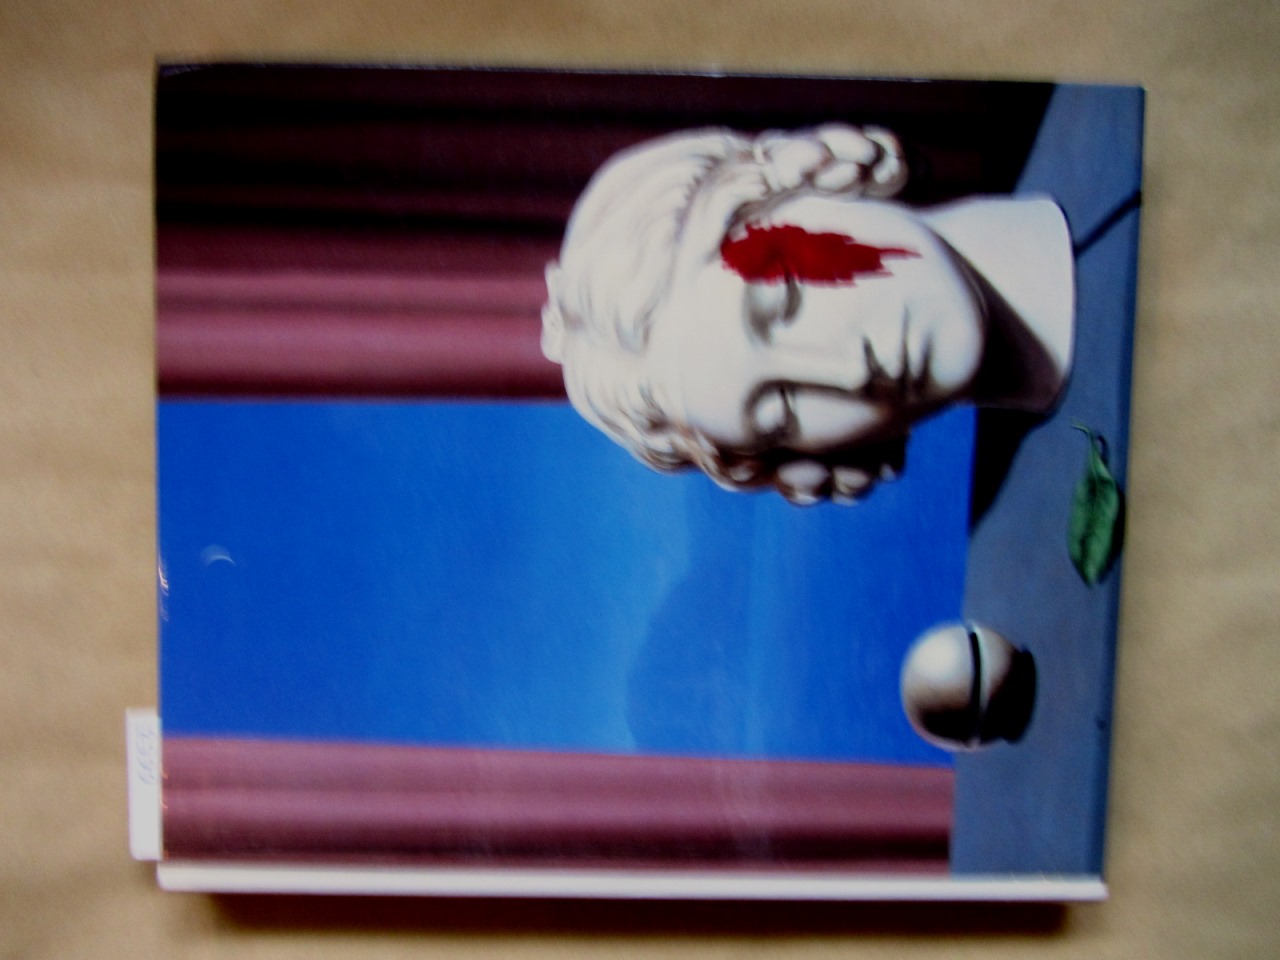   René Magritte. Katalog zur Ausstellung in der Kunsthalle der Hypo-Kulturstiftung. Mit Einleitung und Texten von Wieland Schmied, Camille Goemans, Marcel Marien u.a. 